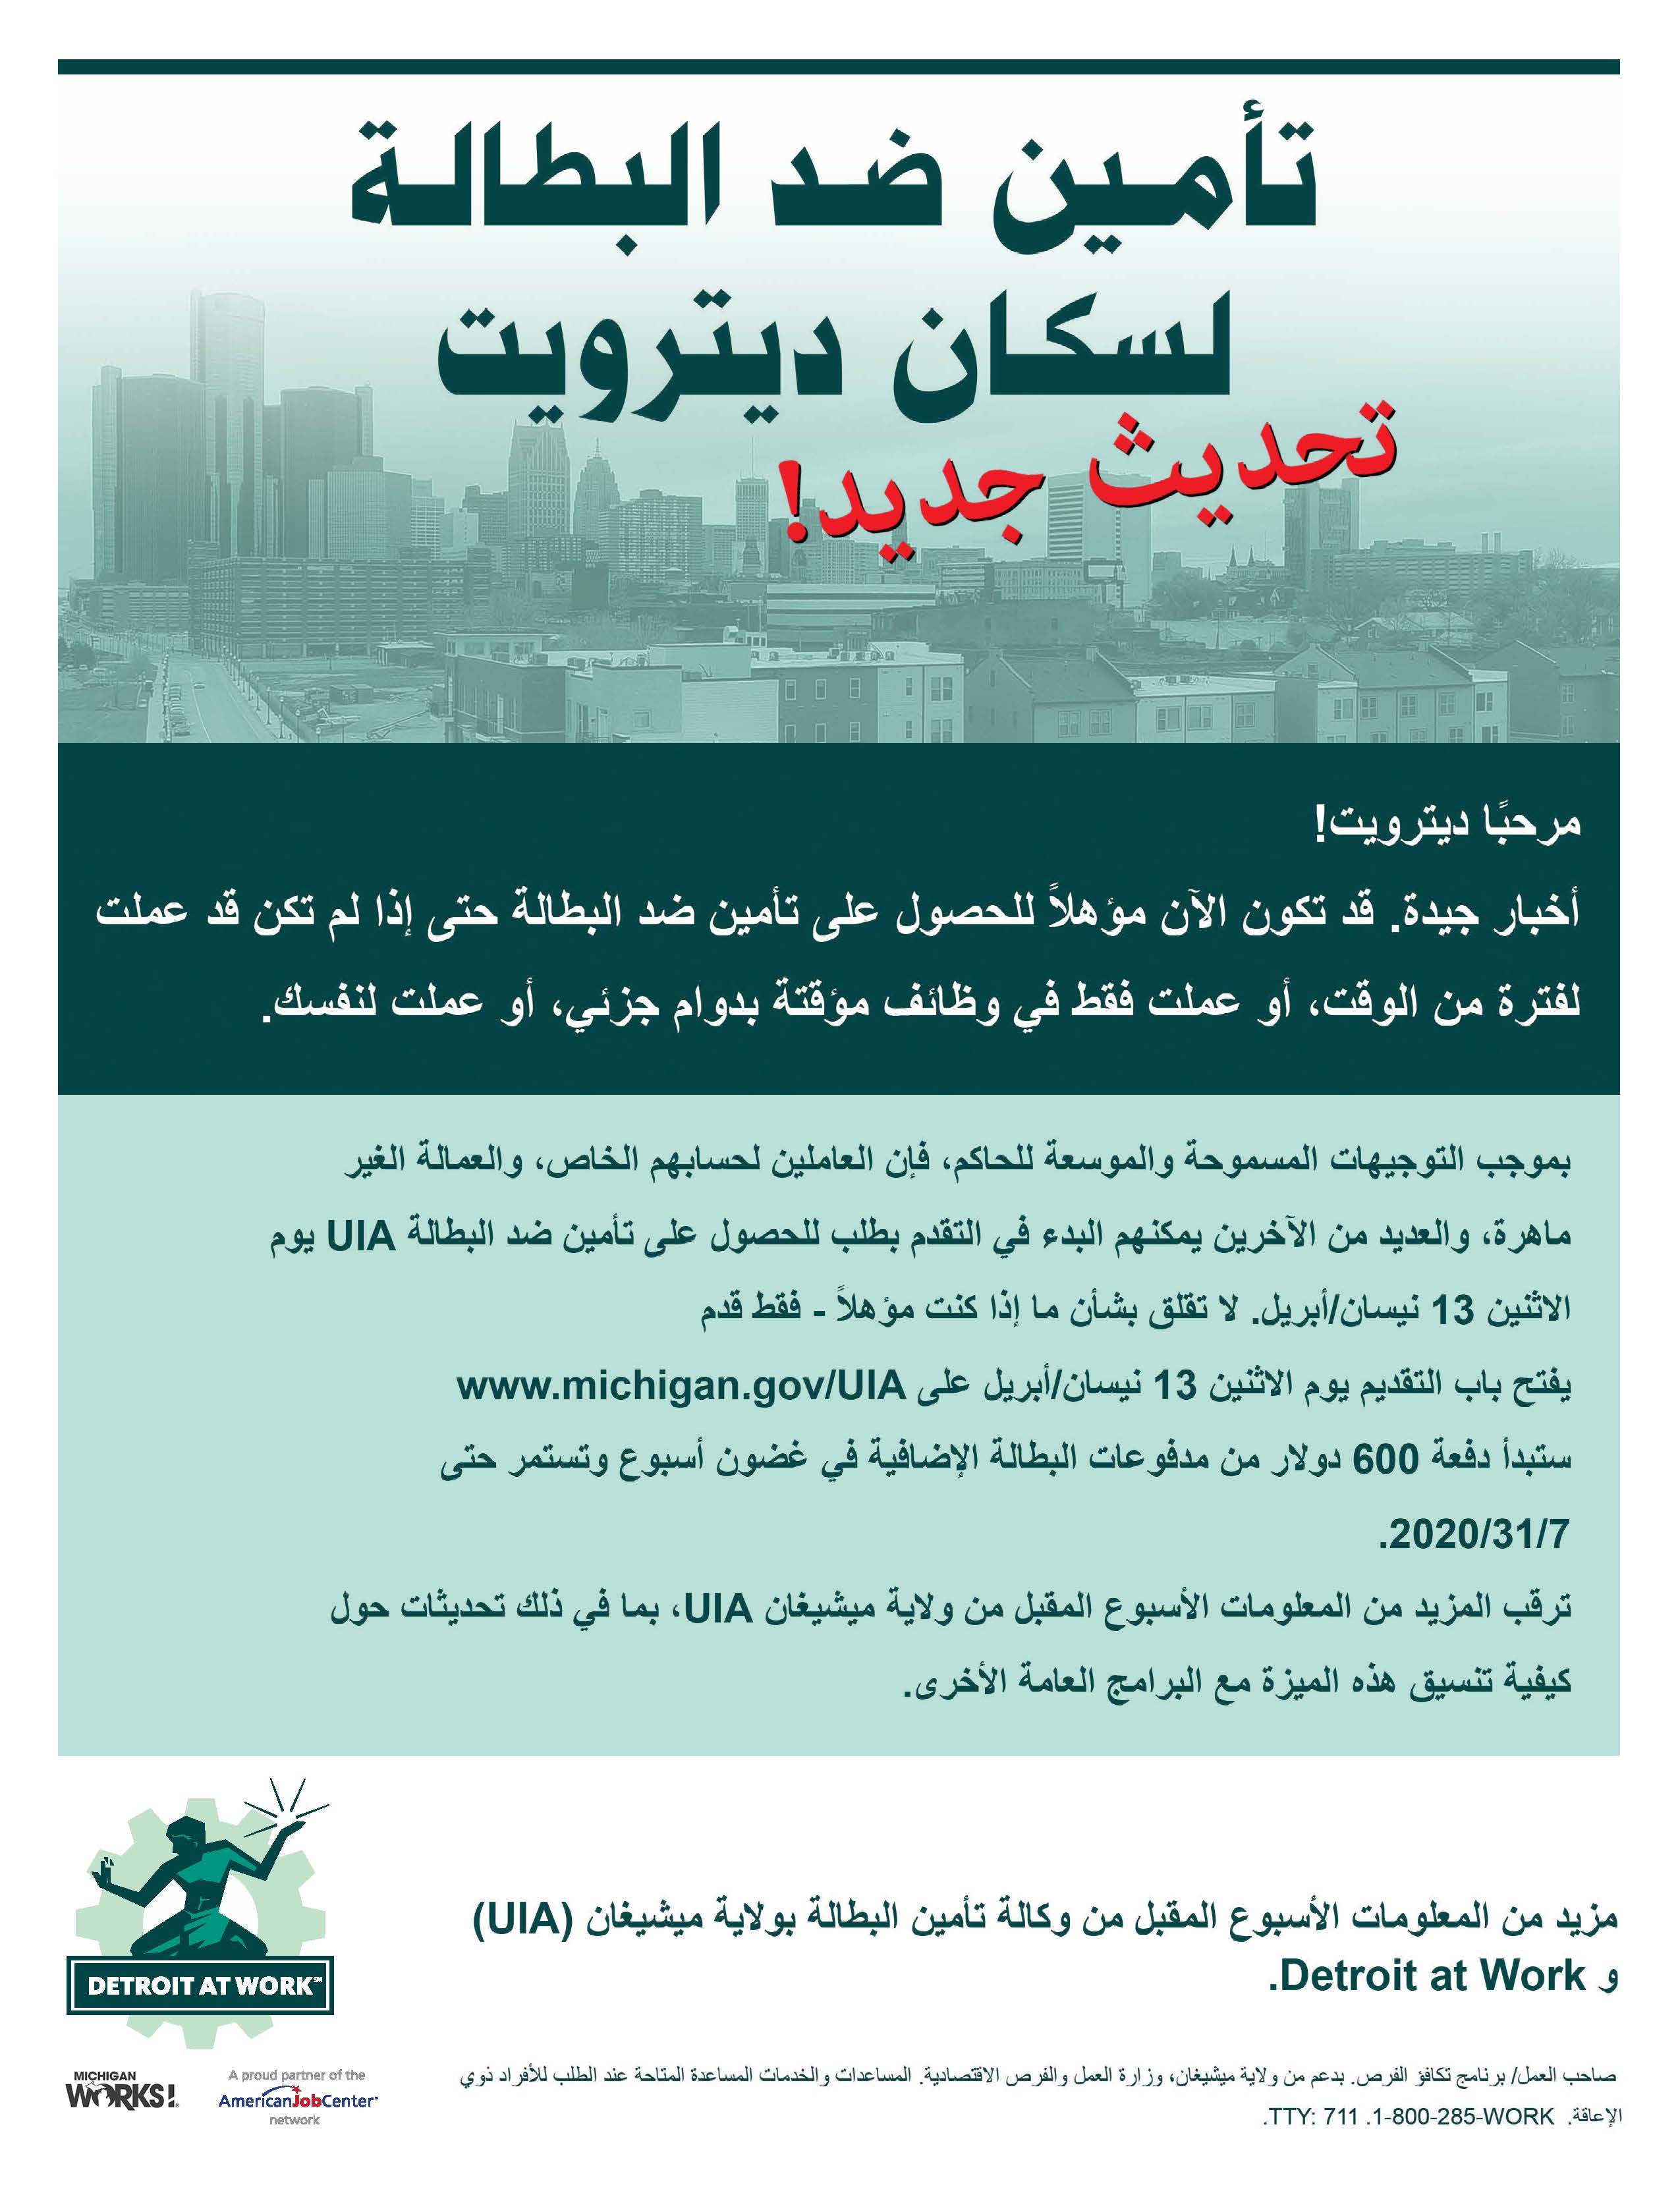 Unemployment Information Arabic